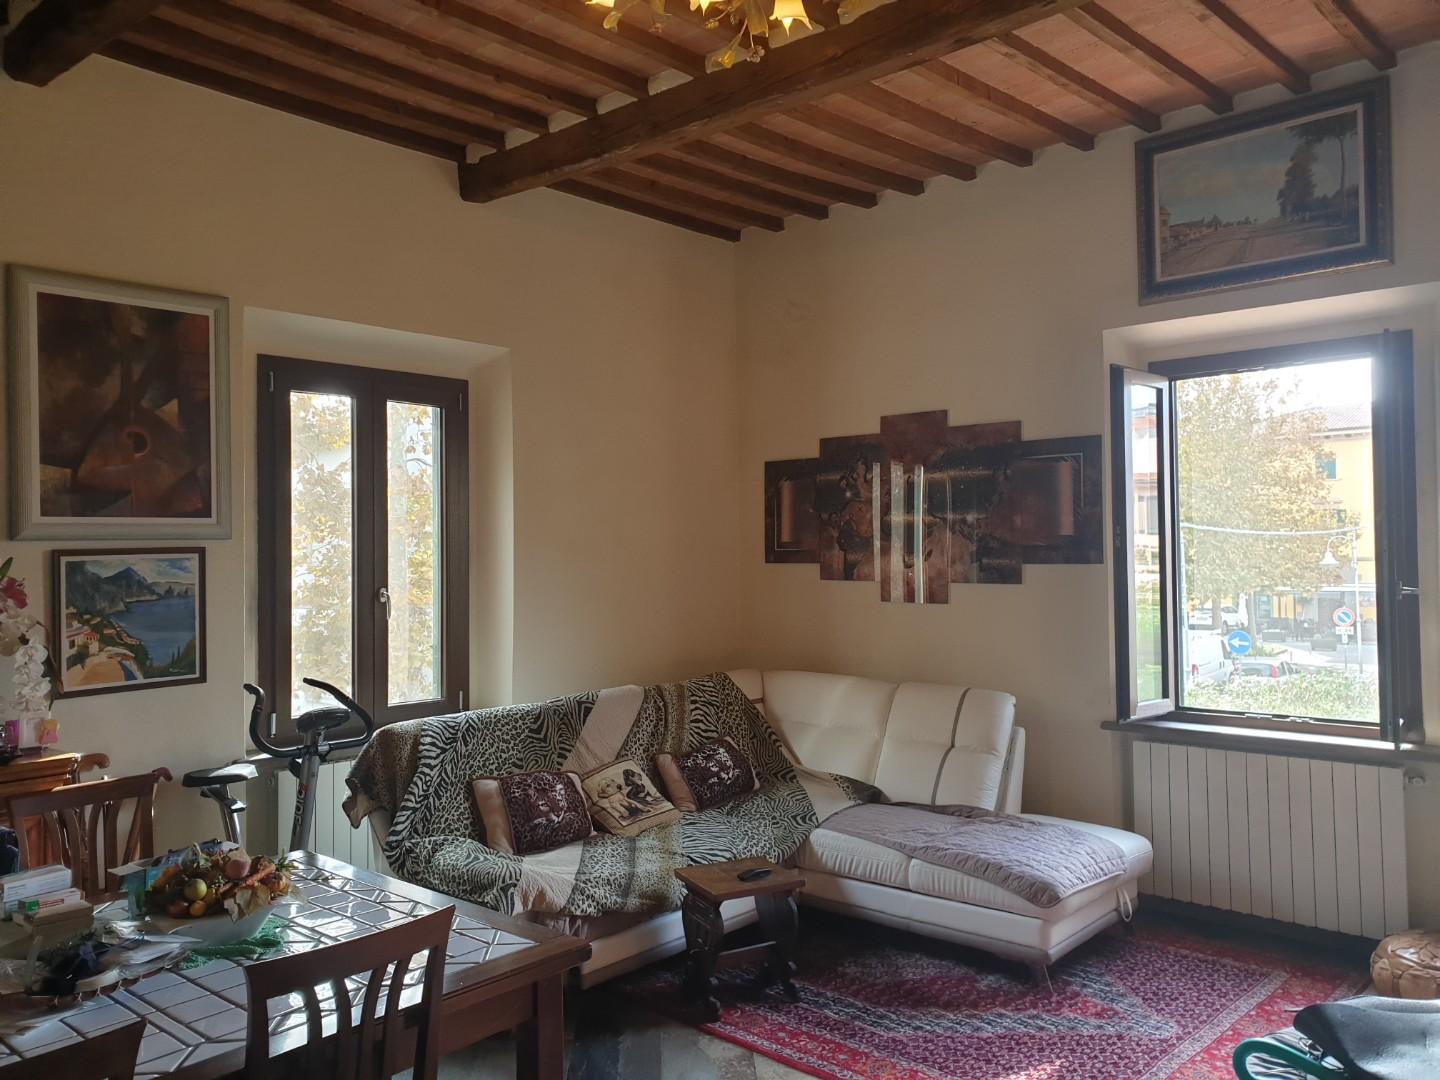 Villa Bifamiliare in vendita a Rosignano Marittimo, 4 locali, prezzo € 265.000 | PortaleAgenzieImmobiliari.it